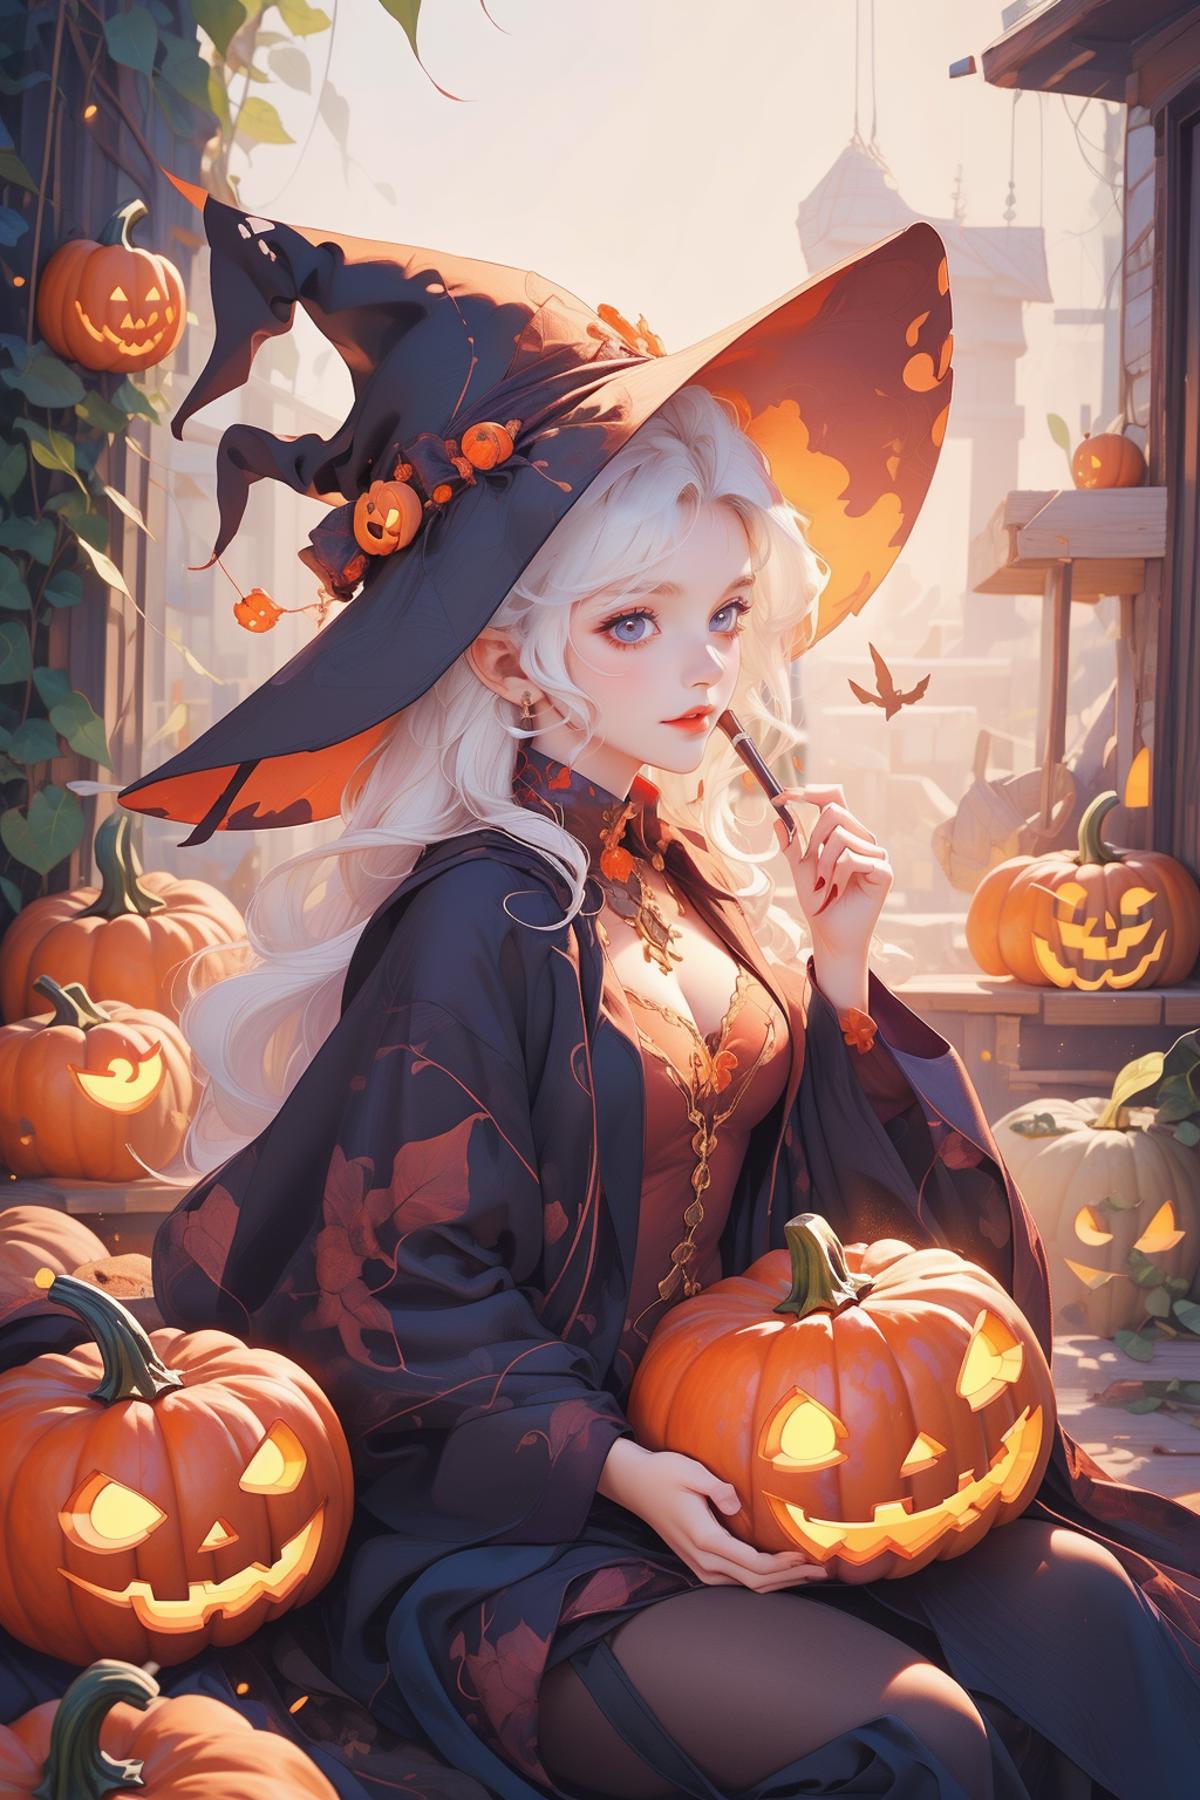 万圣节Halloween, Pumpkin, Witch Hat image by woshimadai